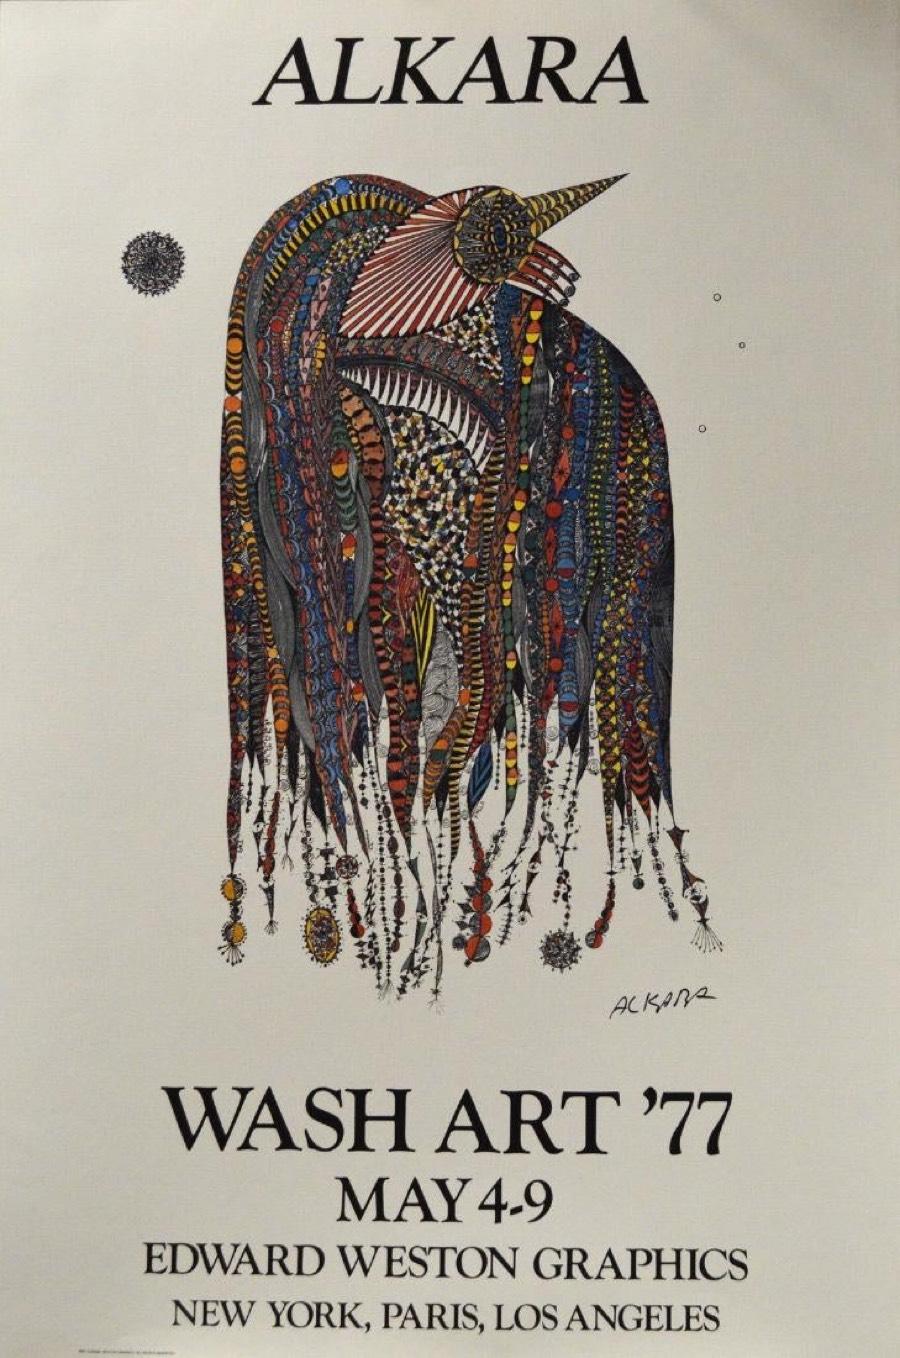 Ovadia Alkara Print - Wash Art ’77, May 4-9-Poster